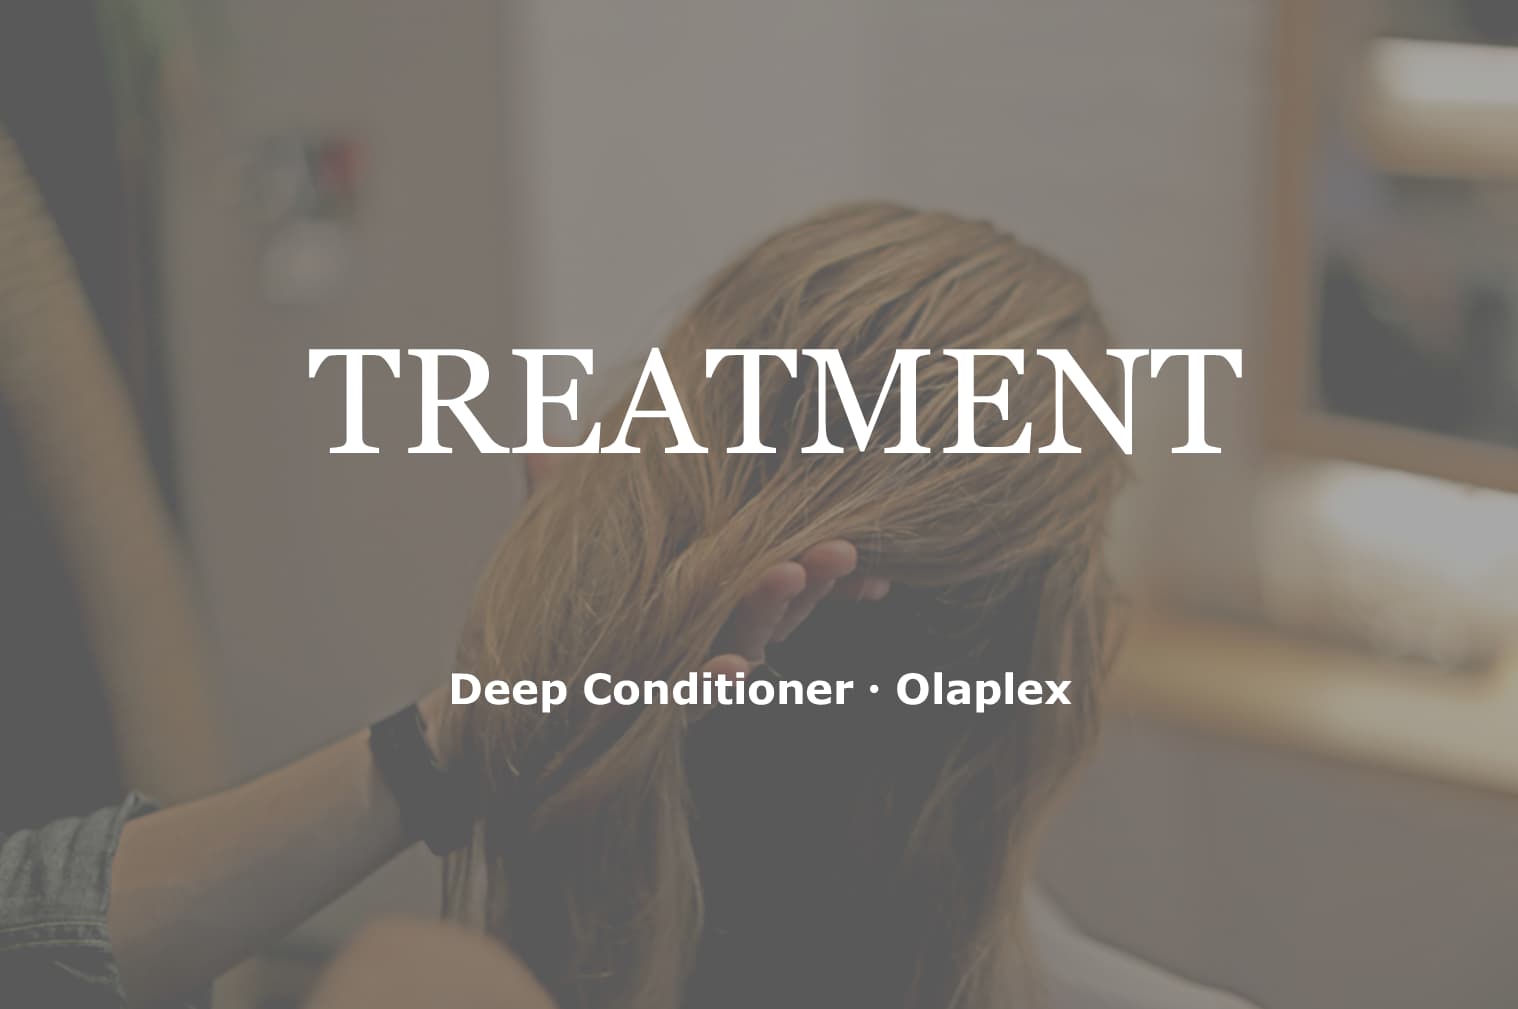 Deep Conditioner, Olaplex